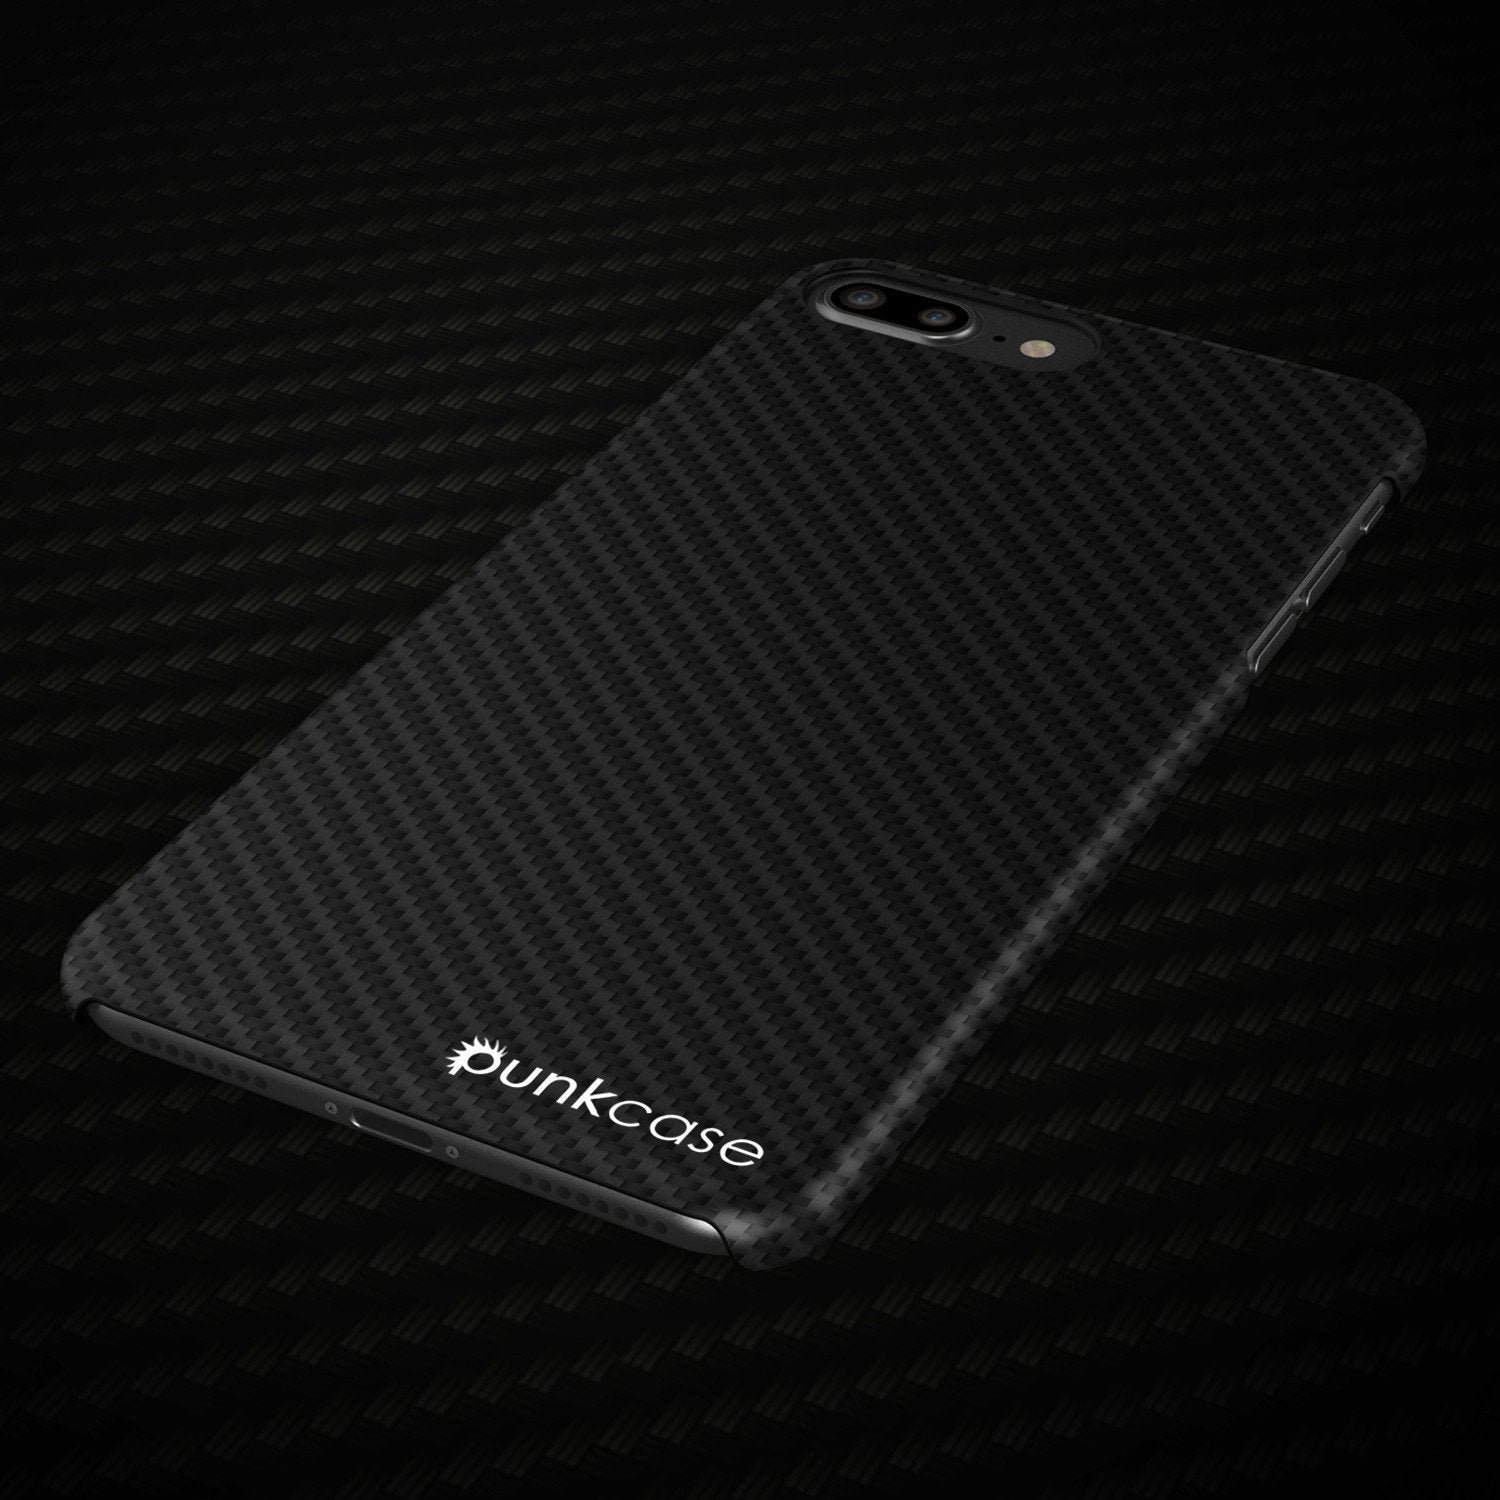 iPhone 8+ Plus Case - Punkcase CarbonShield Jet Black - PunkCase NZ